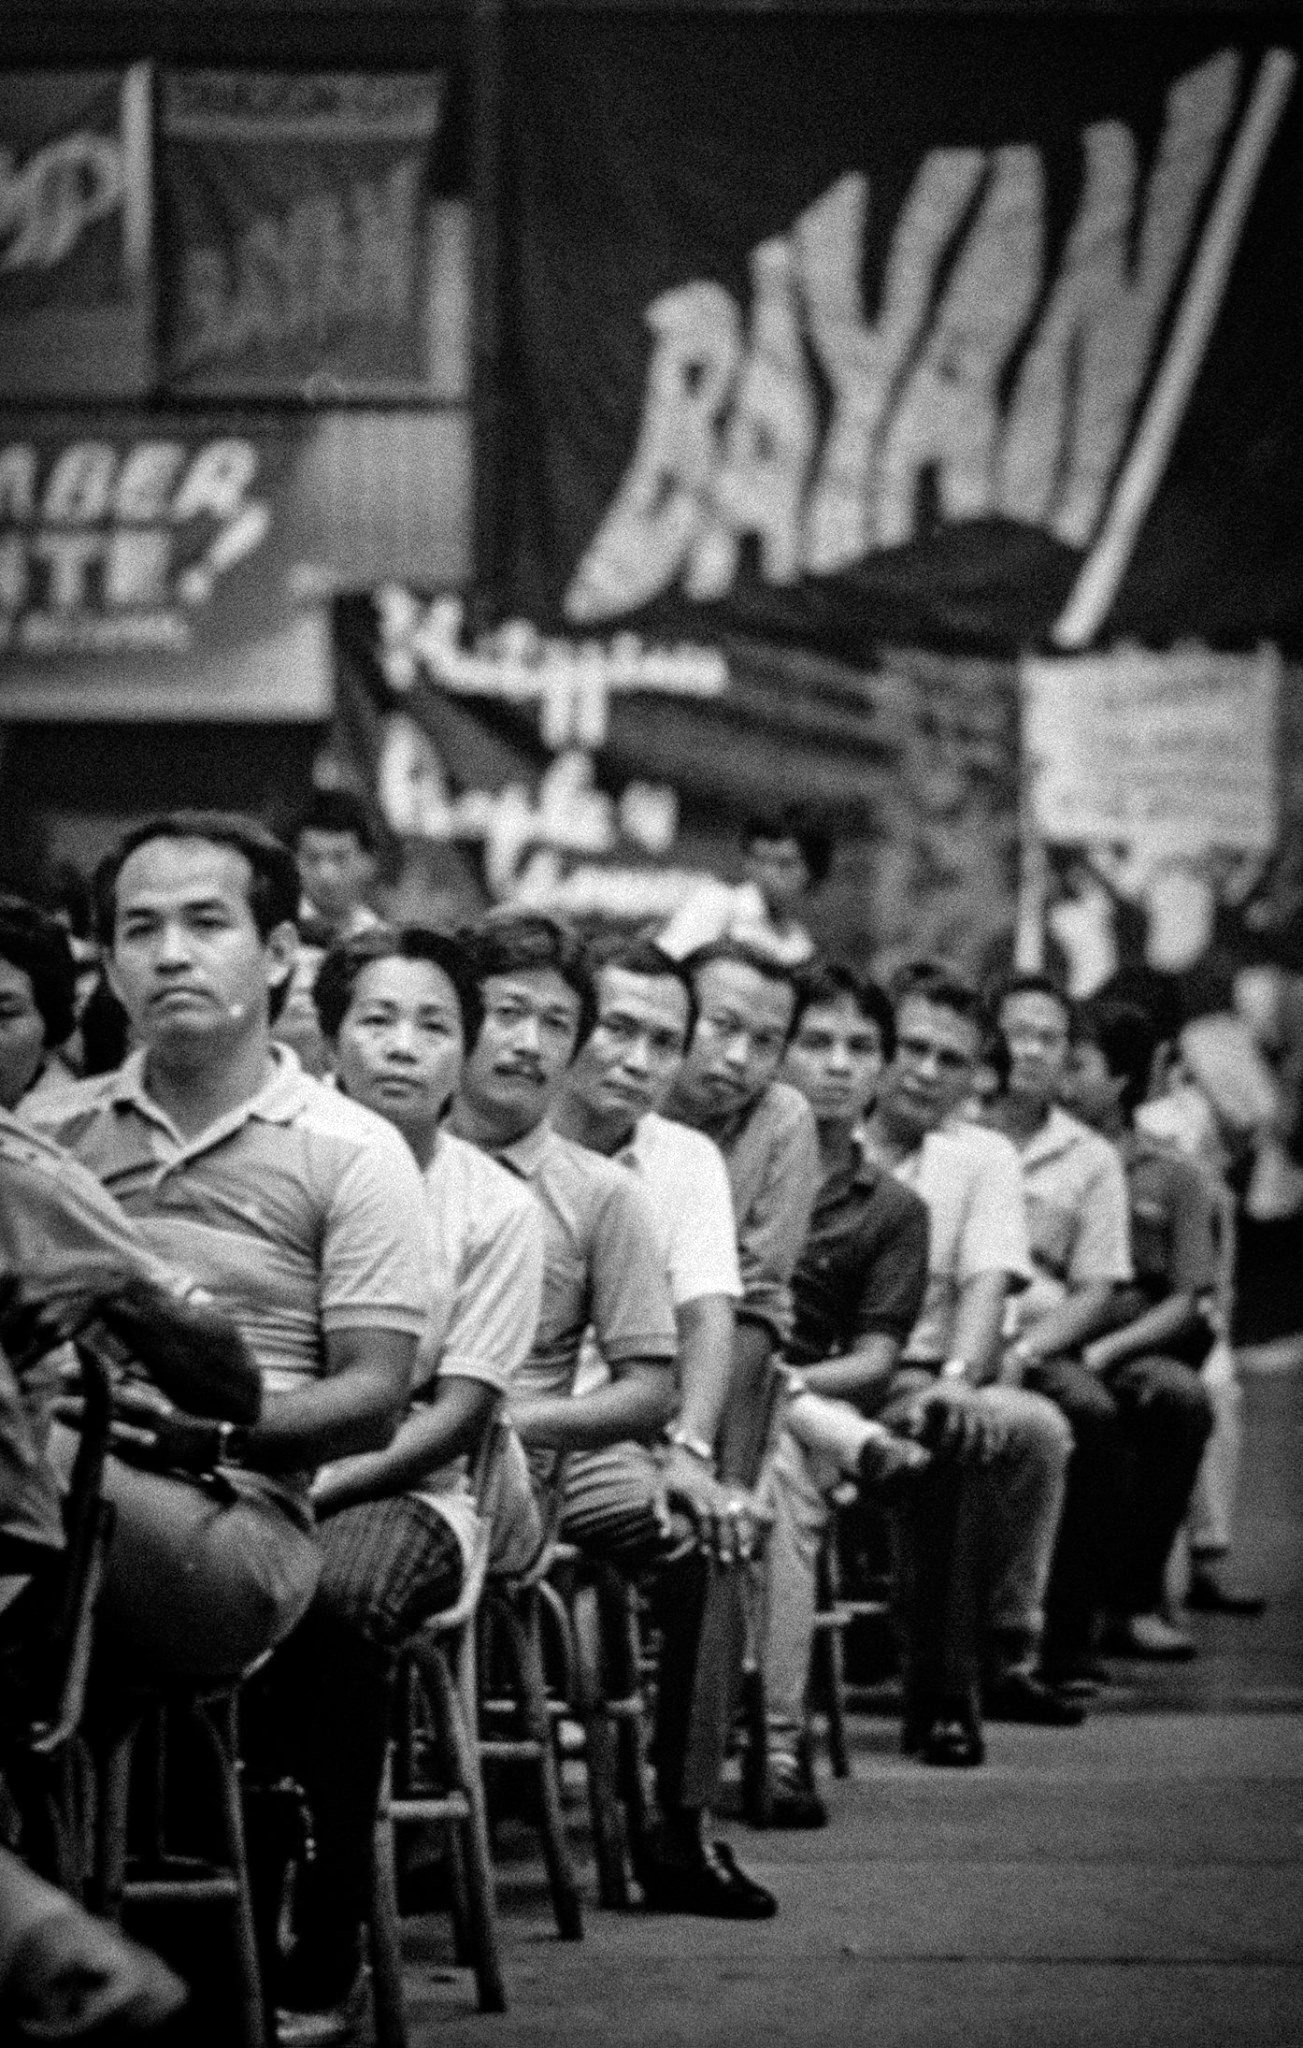 martial law photo essay